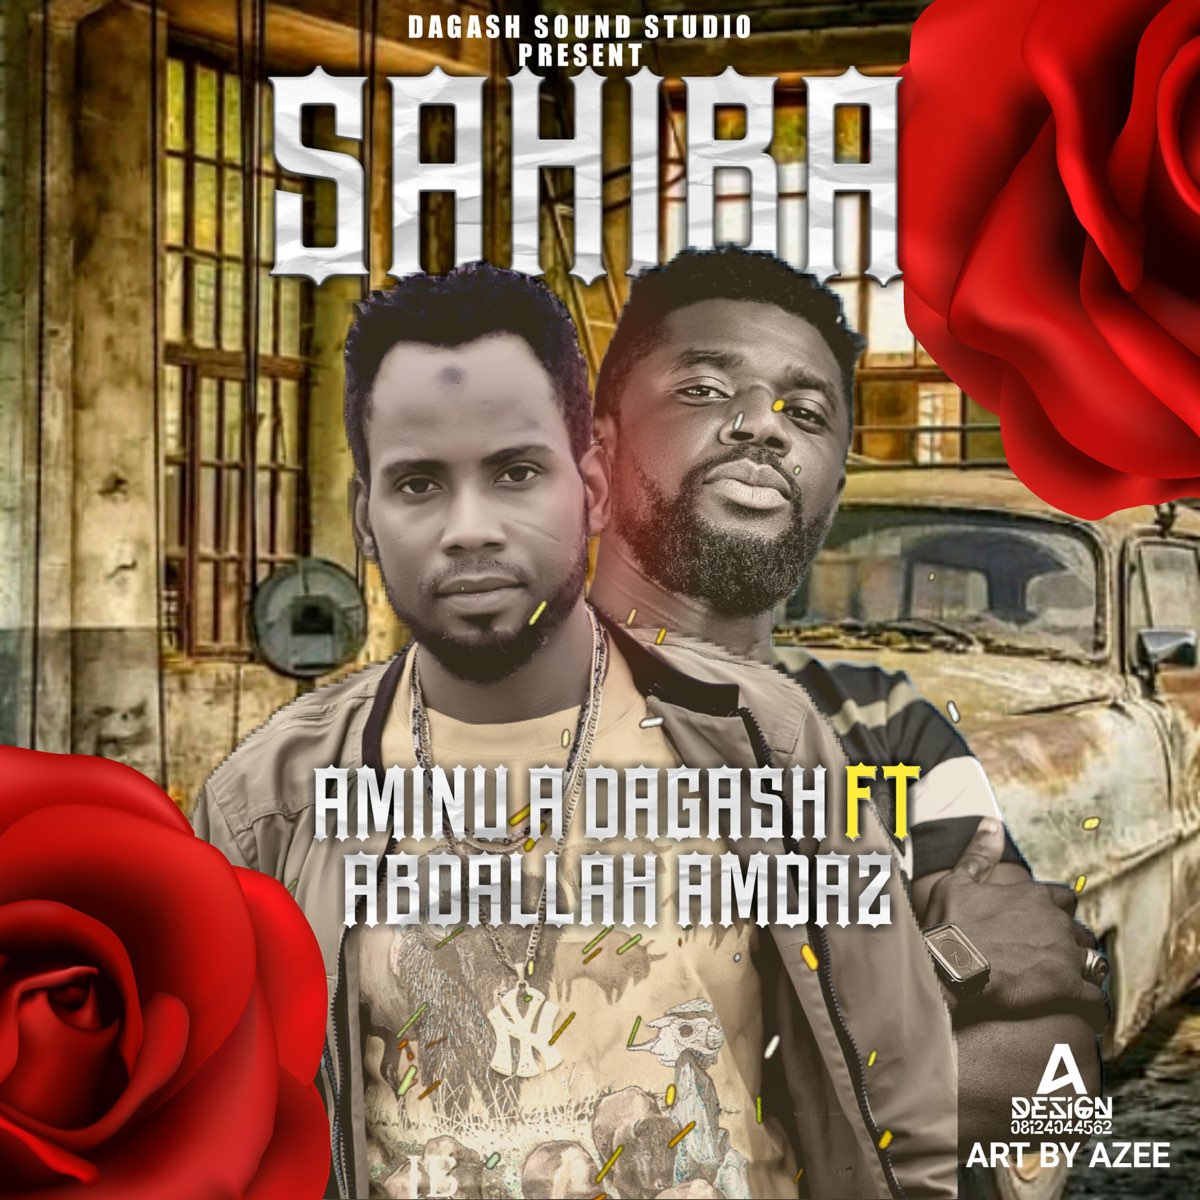 SAHIBA (feat. Aminu a Dagash) - Single by Abdallah Amdaz on Apple Music